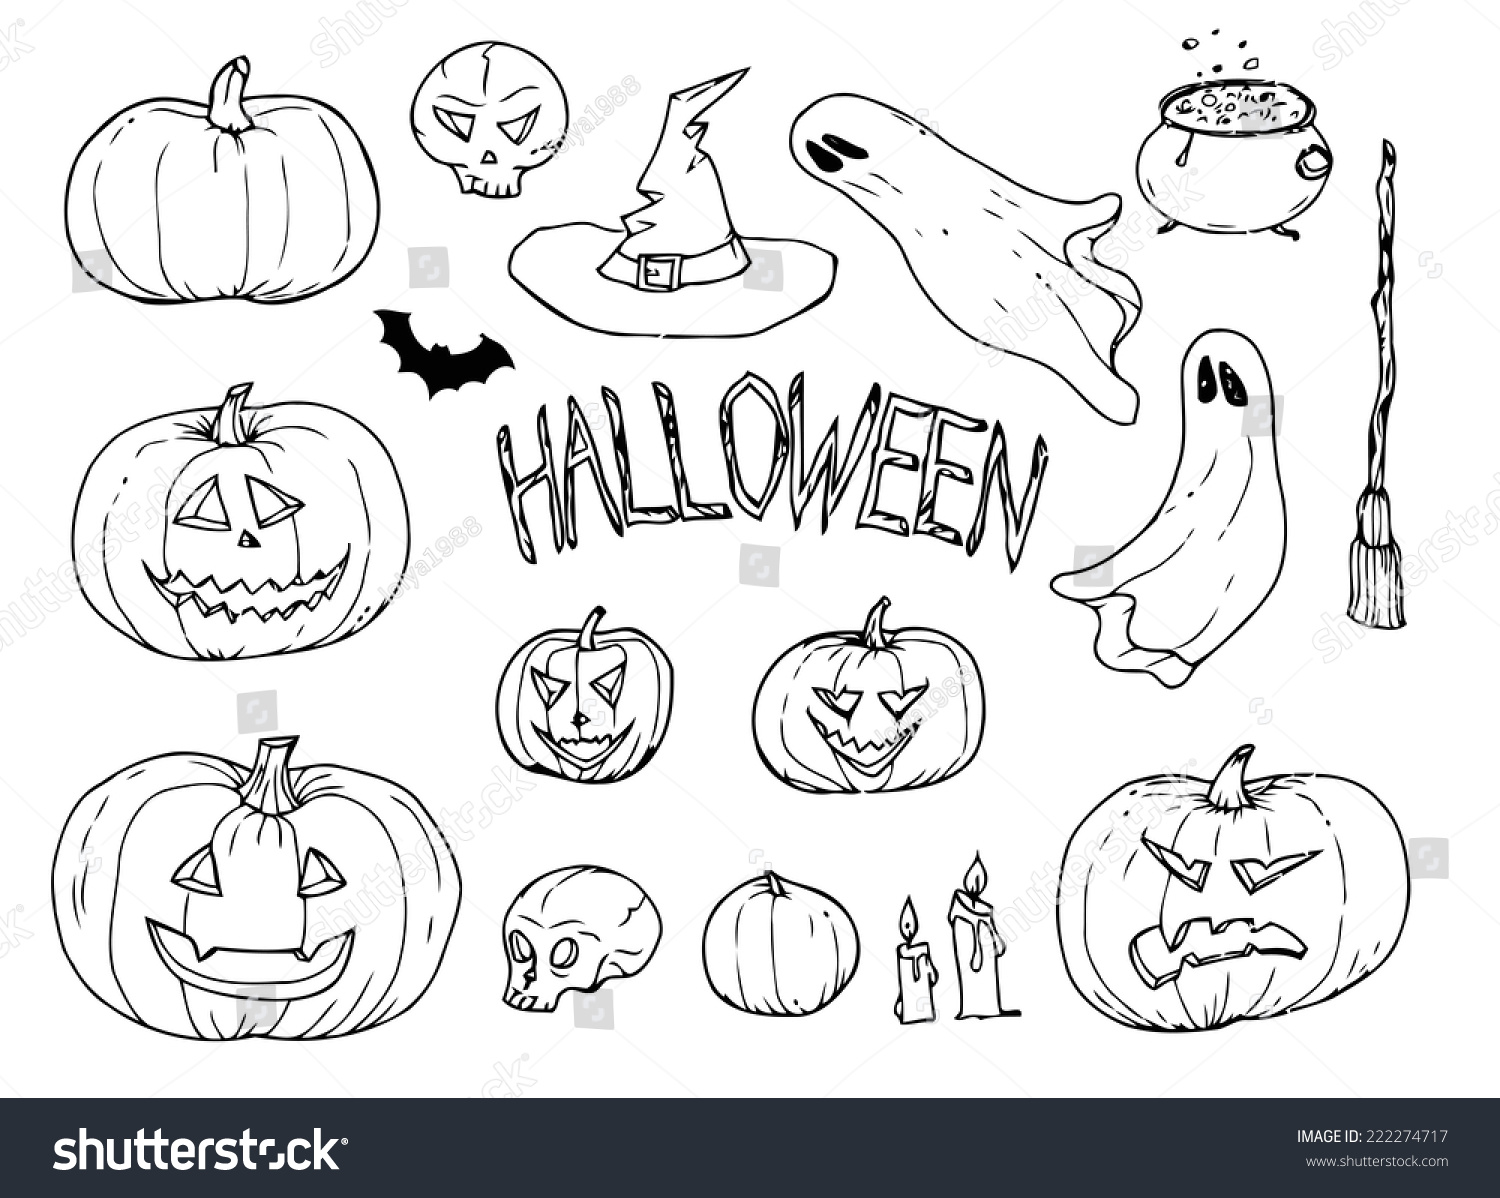 Рисунок на Хэллоуин легкий для срисовки